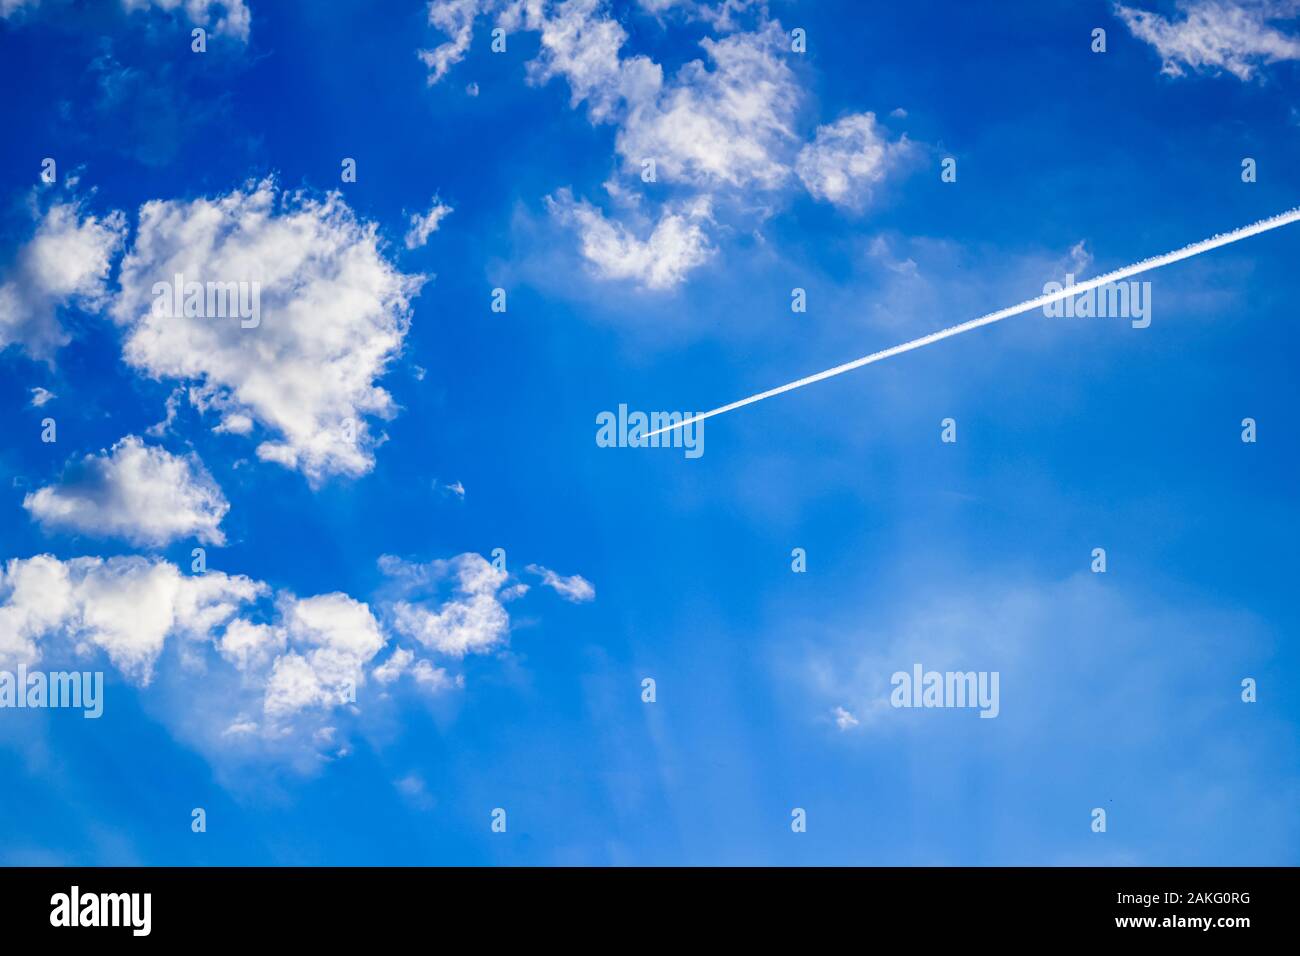 Avion à grande altitude dans un ciel bleu clair avec des nuages Banque D'Images